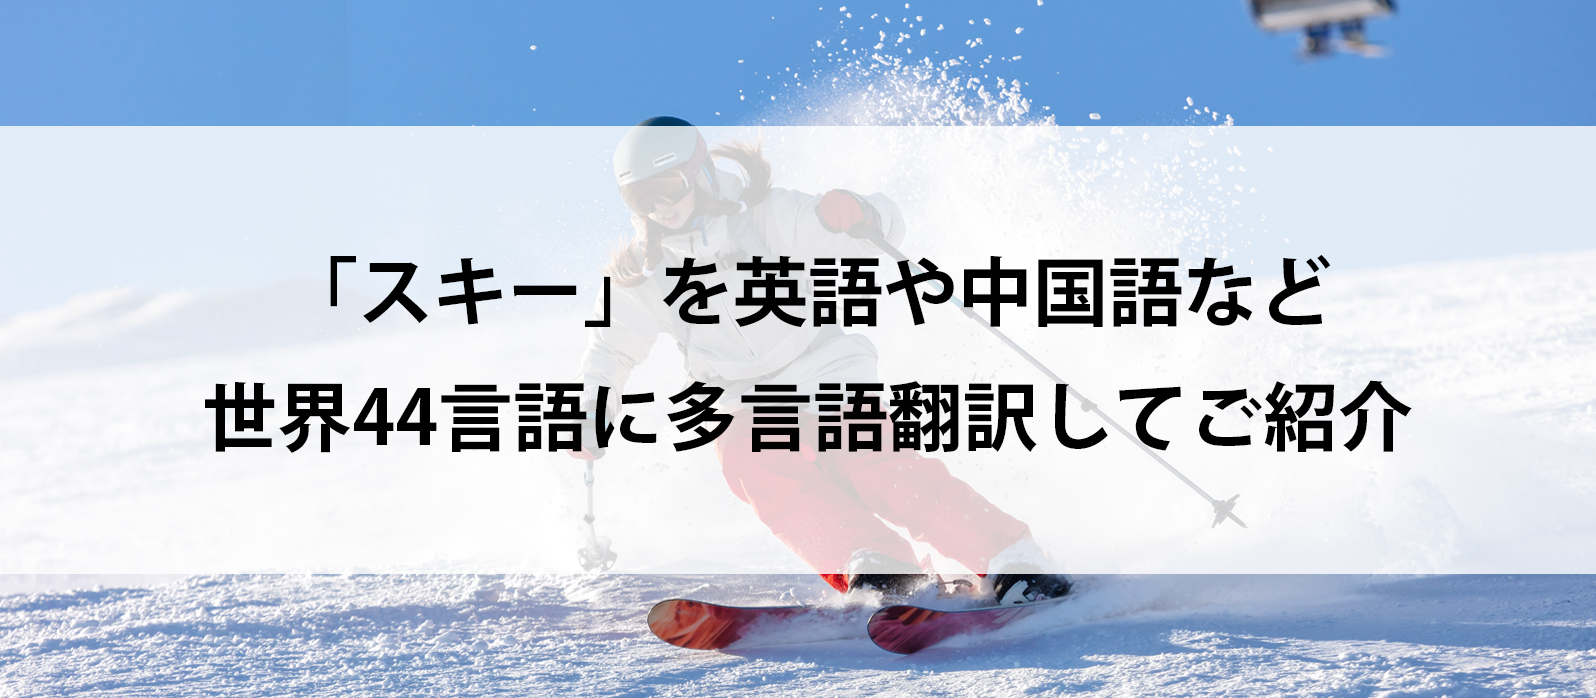 「スキー」を英語や中国語など世界44言語に多言語翻訳してご紹介